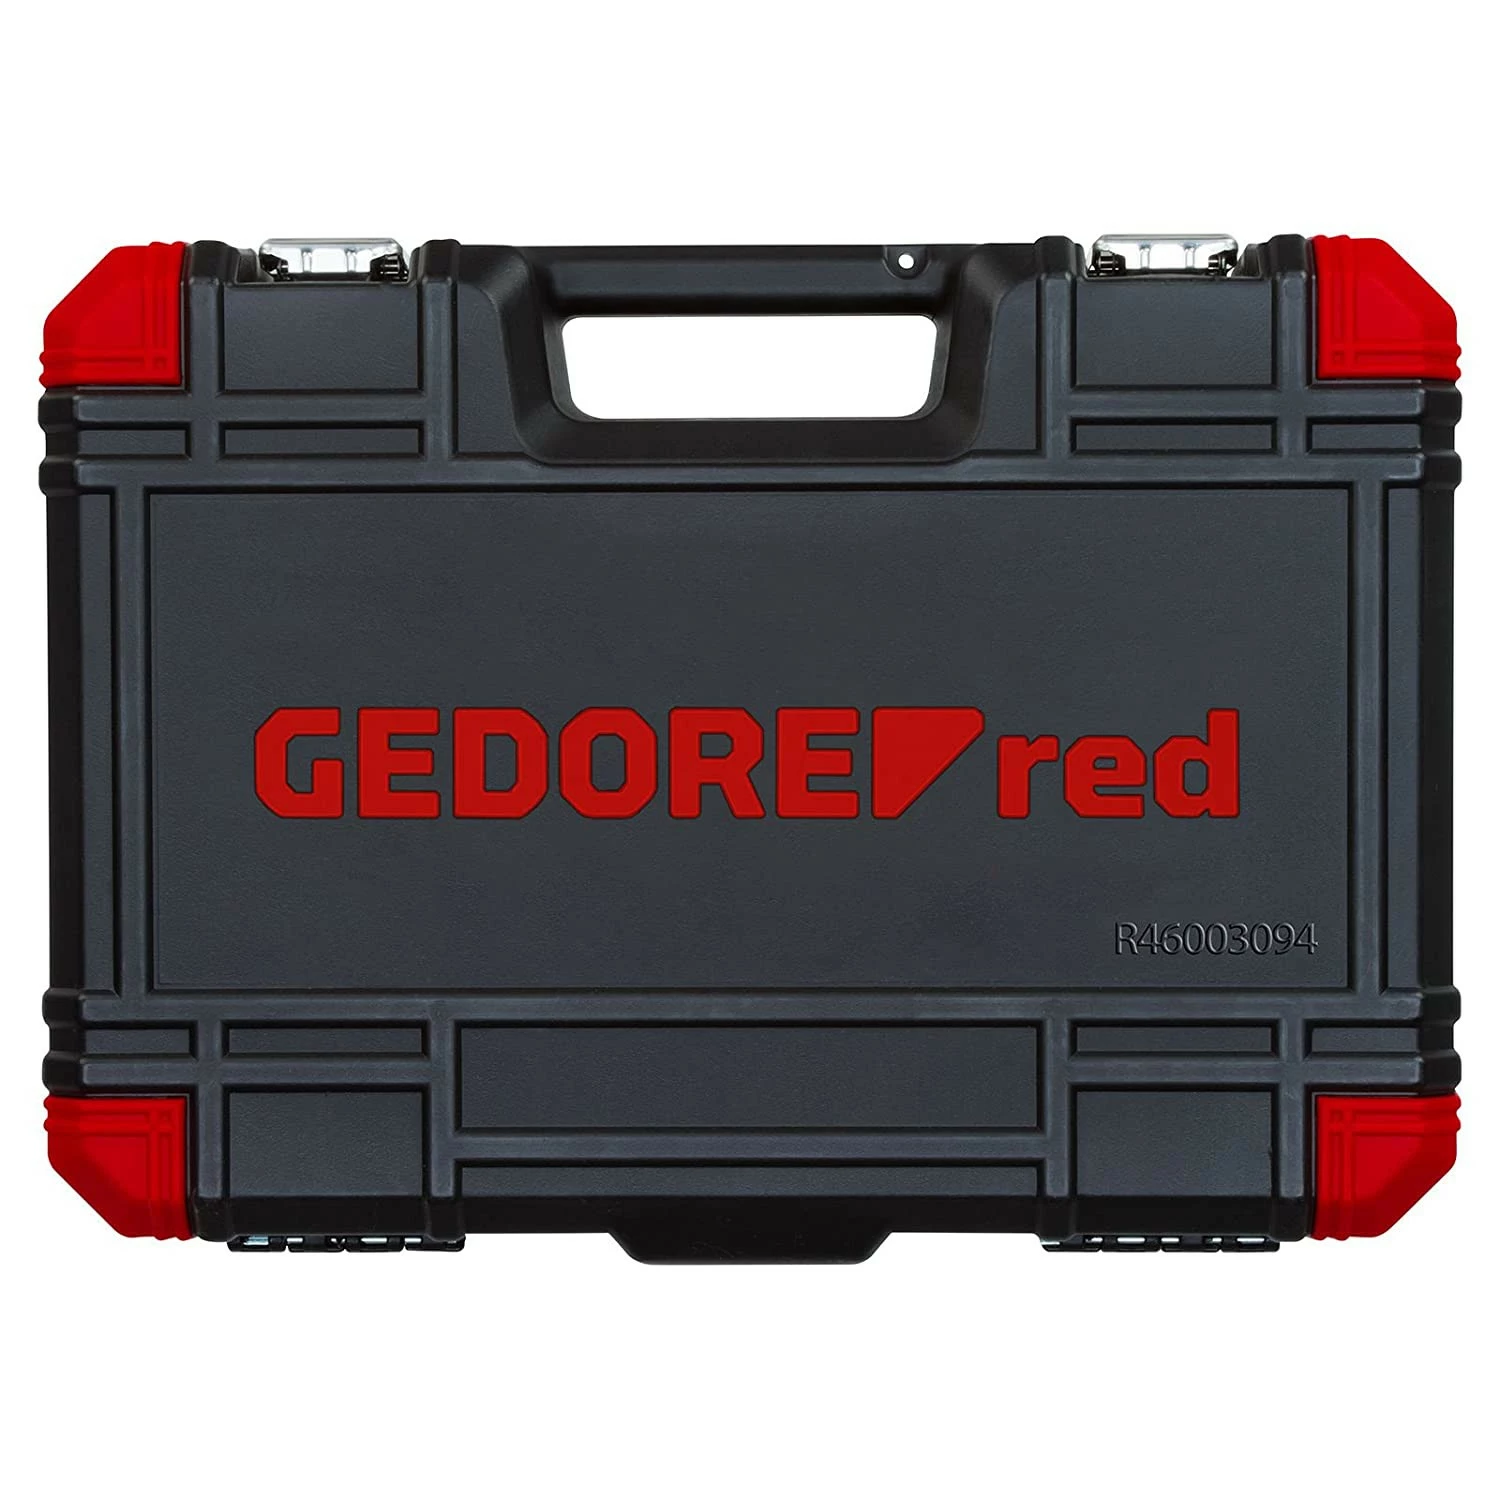 Gedore RED R46003094 94-delige Dopsleutel-/gereedschapset - 1/4" en 1/2"